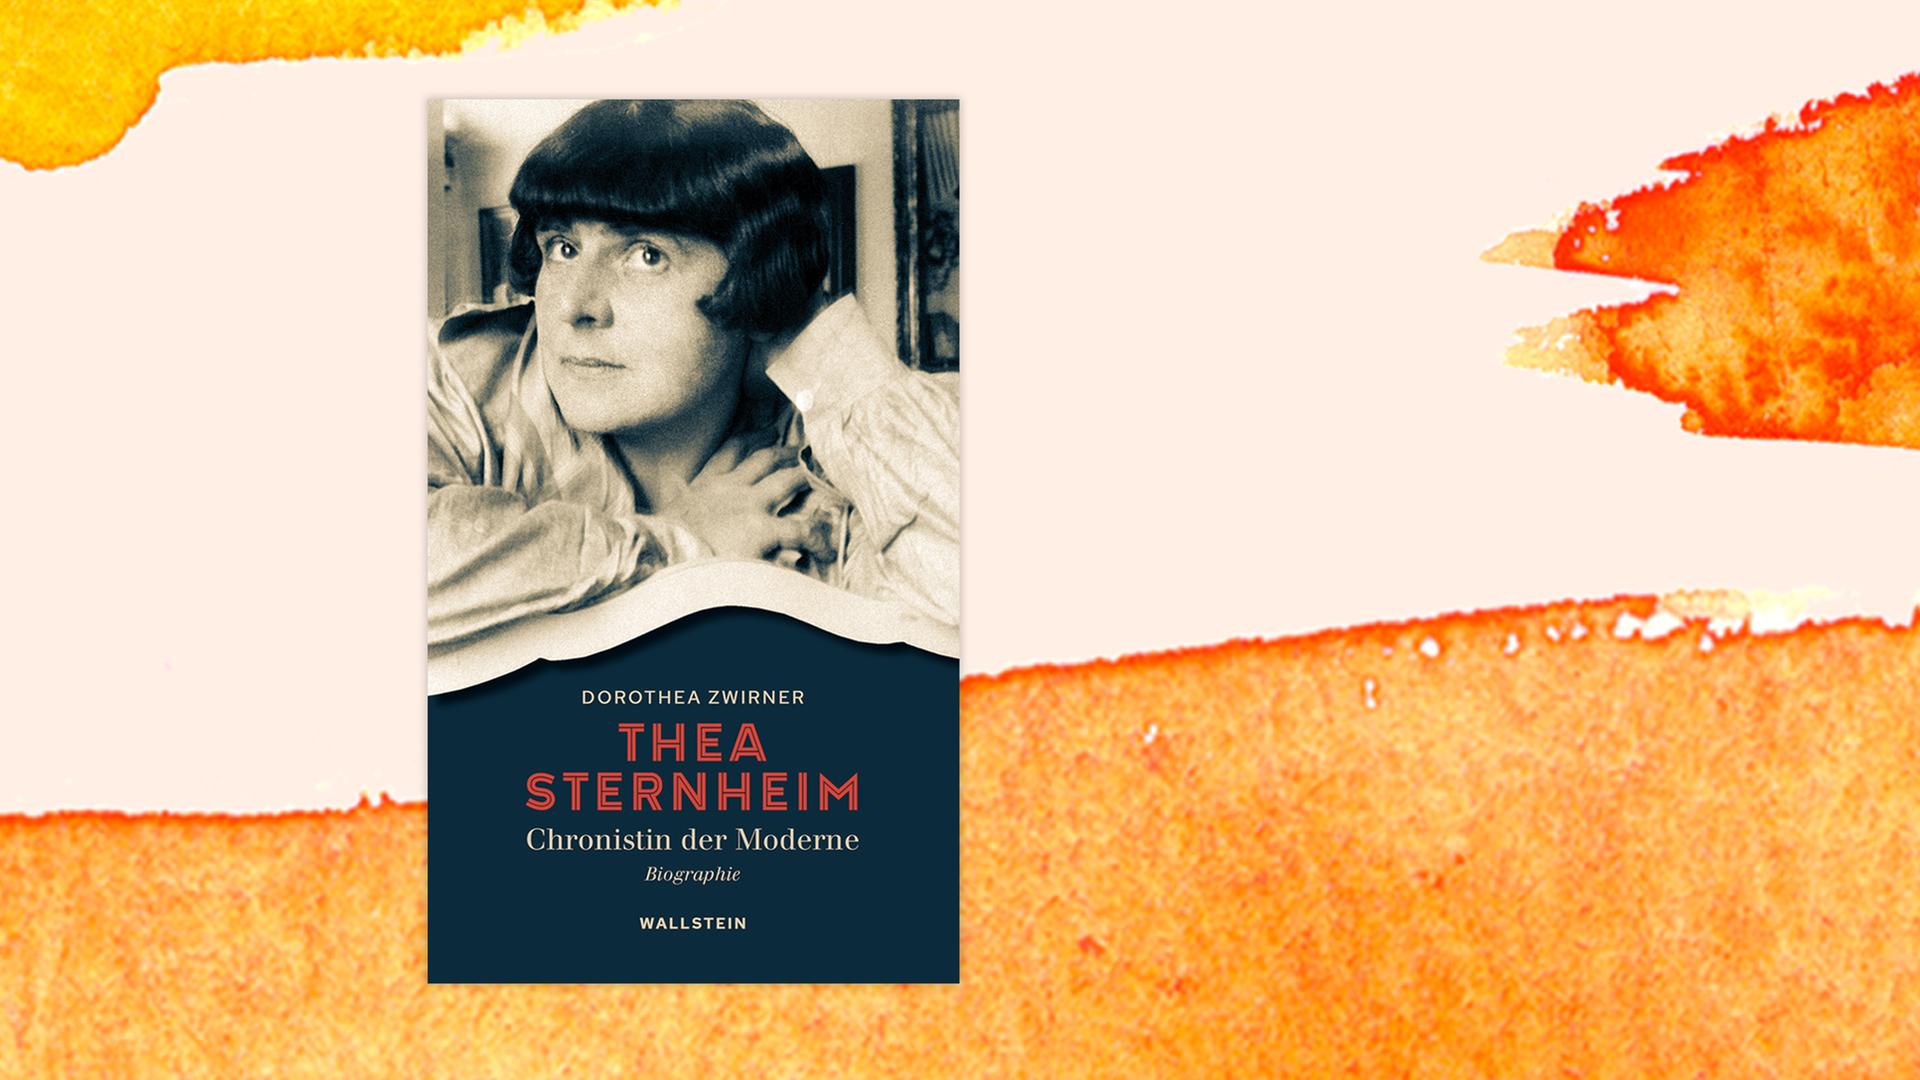 Das Cover der Biografie von Dorothea Zwirner über Thea Sternheim auf orange-weißem Grund. Auf dem Cover ist ein Porträitfoto eine Frau mit recht kurzen, schwarzen Haaren zu sehen. Sie trägt leger eine helle Bluse.  